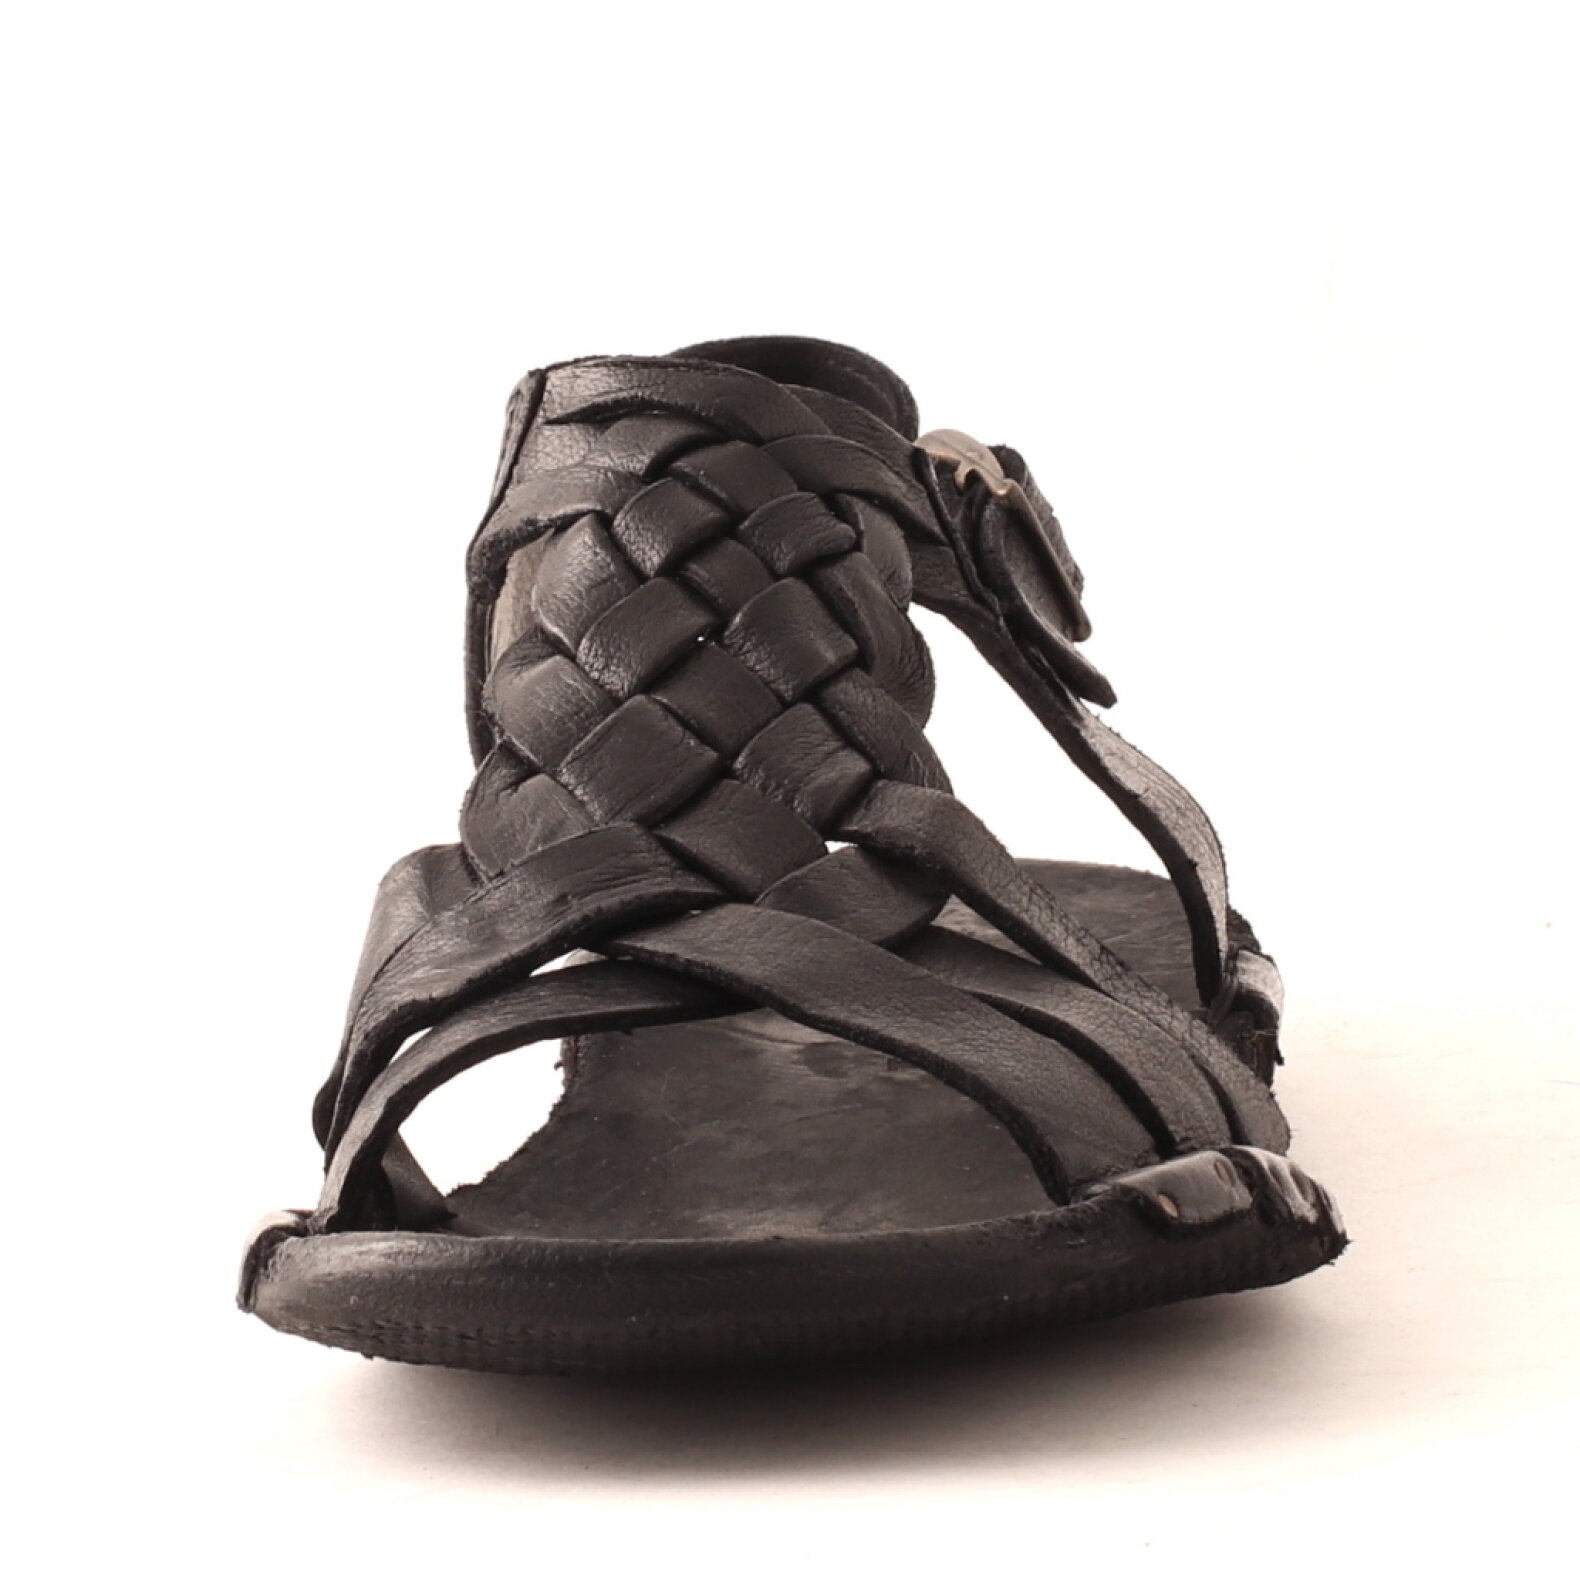 Lofina Bubetti sandal a braided detail